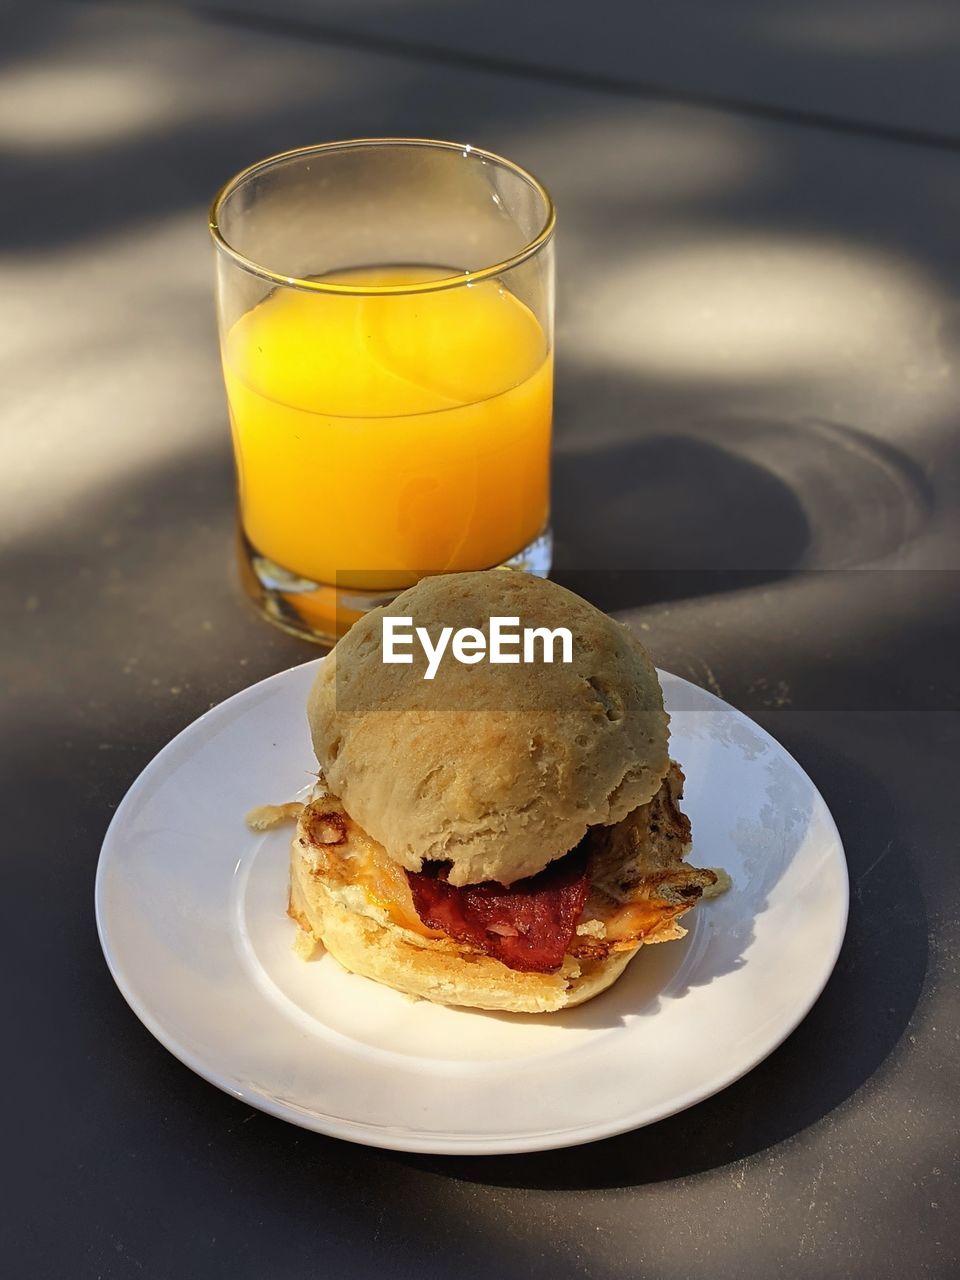 Breakfast sandwich and glass of orange juice 